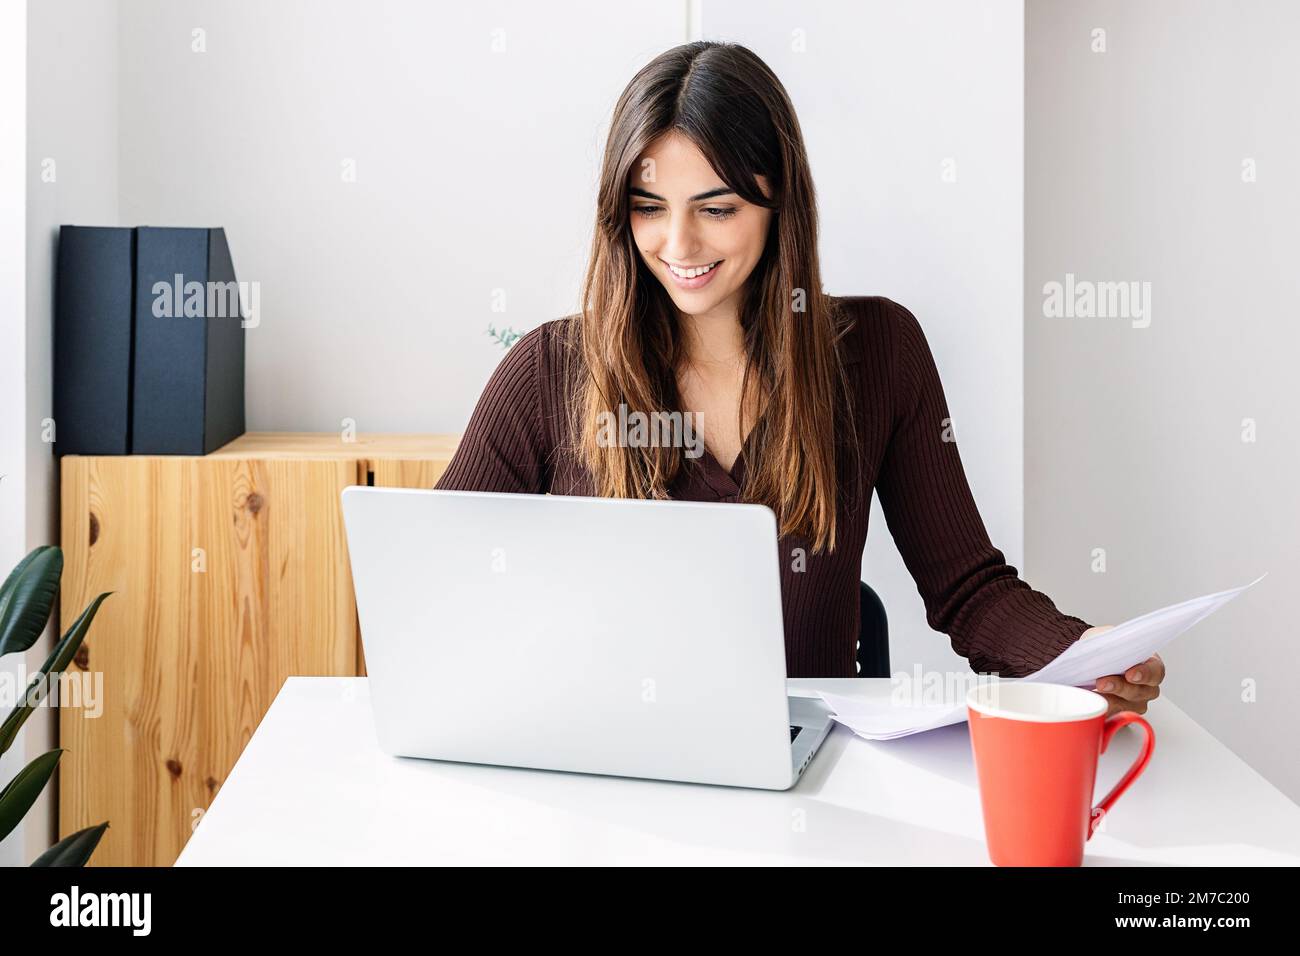 Lächelnde junge Erwachsene Frau, die zu Hause an einem Notebook arbeitet Stockfoto